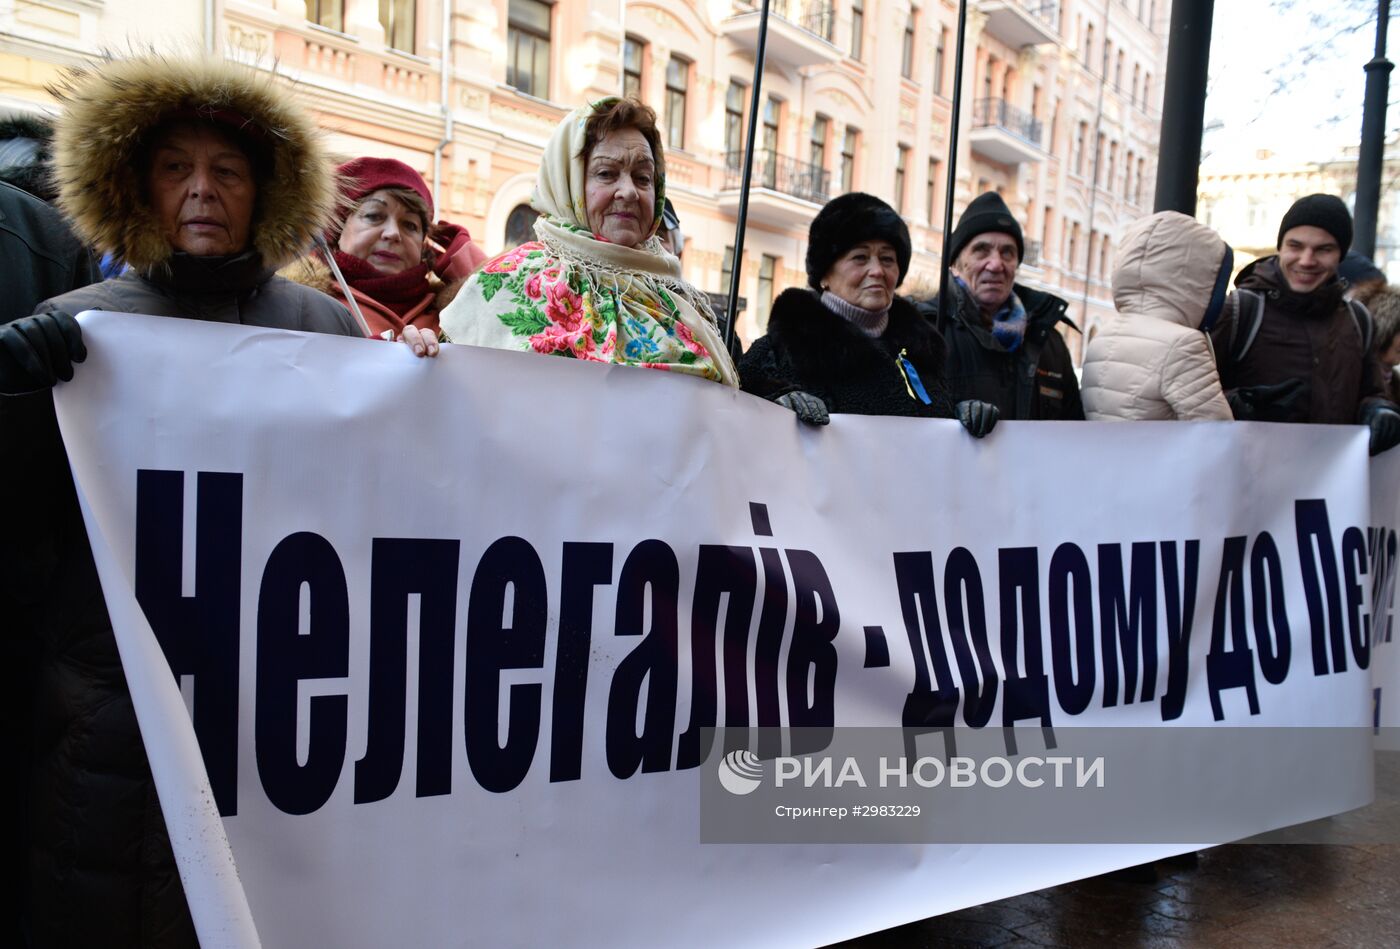 Митинг против принятия квоты на расселение мигрантов на Украине